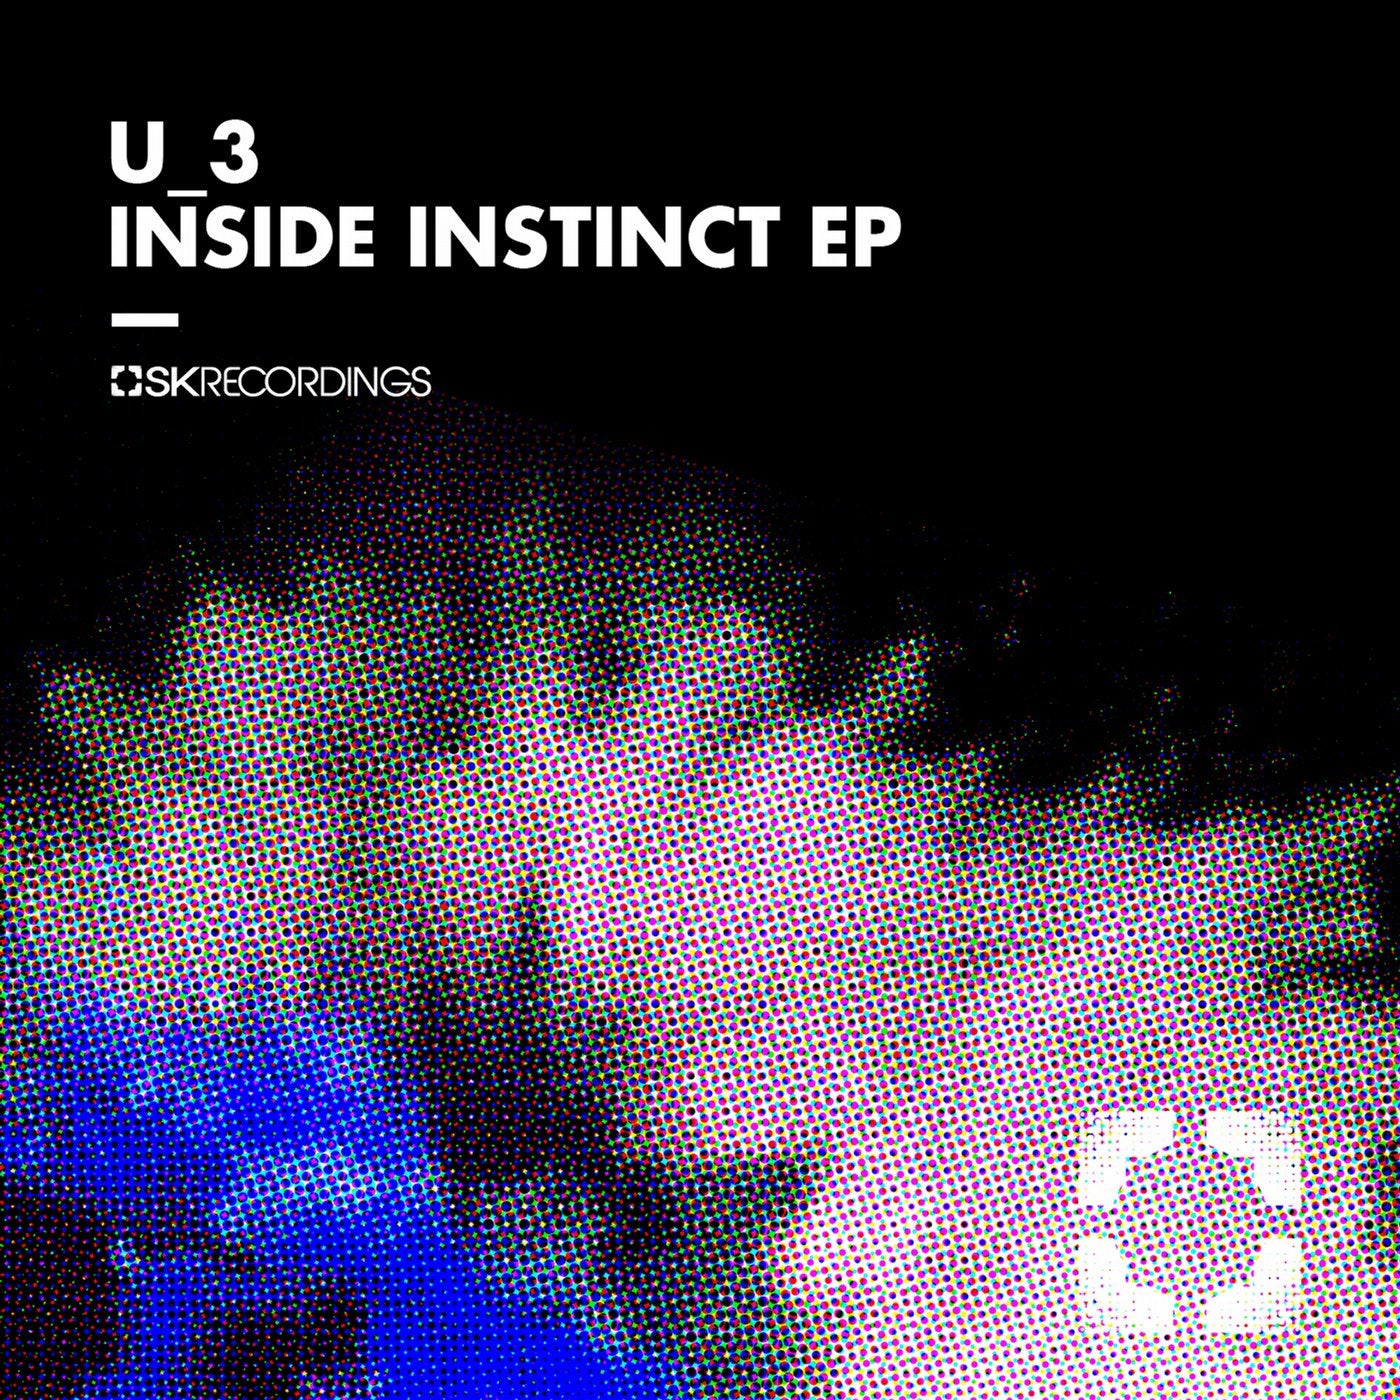 Inside Instinct EP